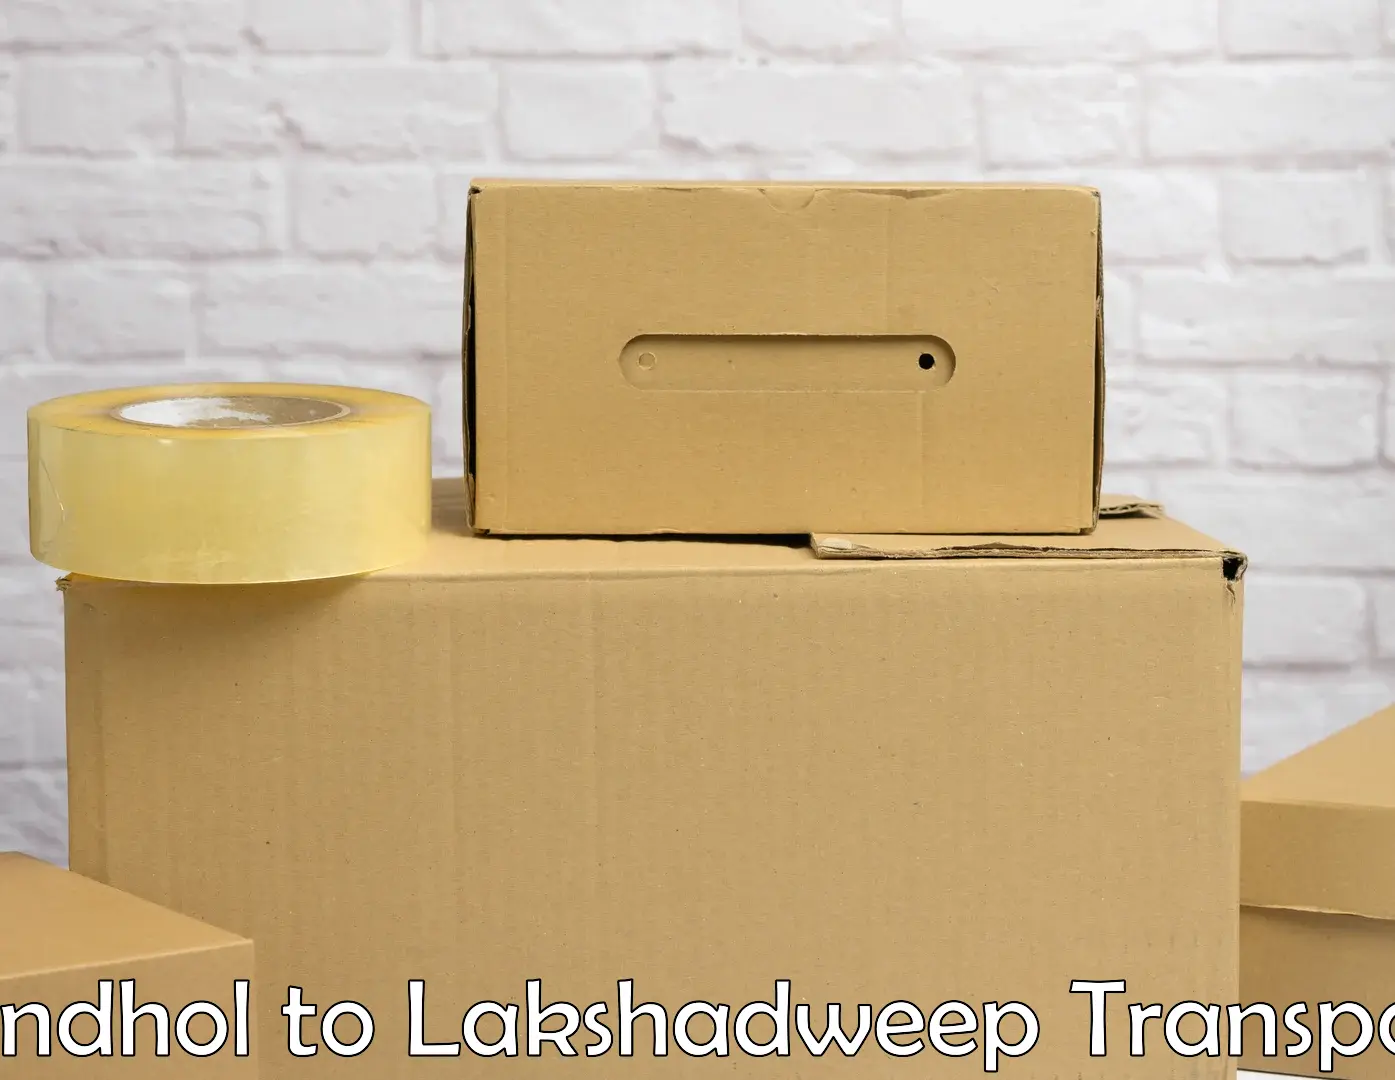 Bike shipping service Sandhol to Lakshadweep